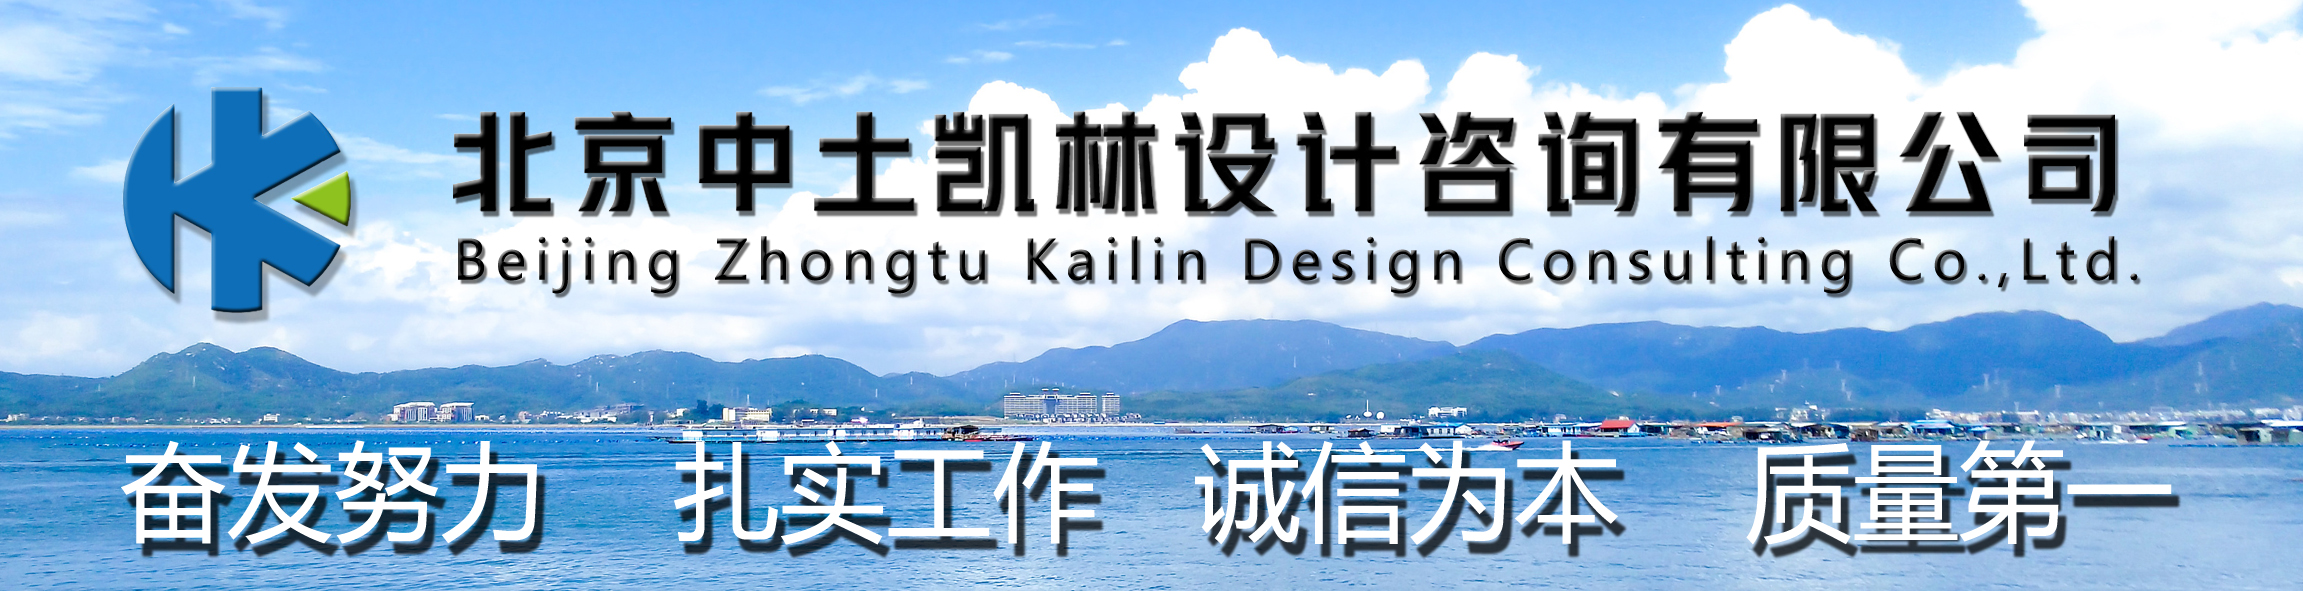 北京中土凯林设计咨询有限公司